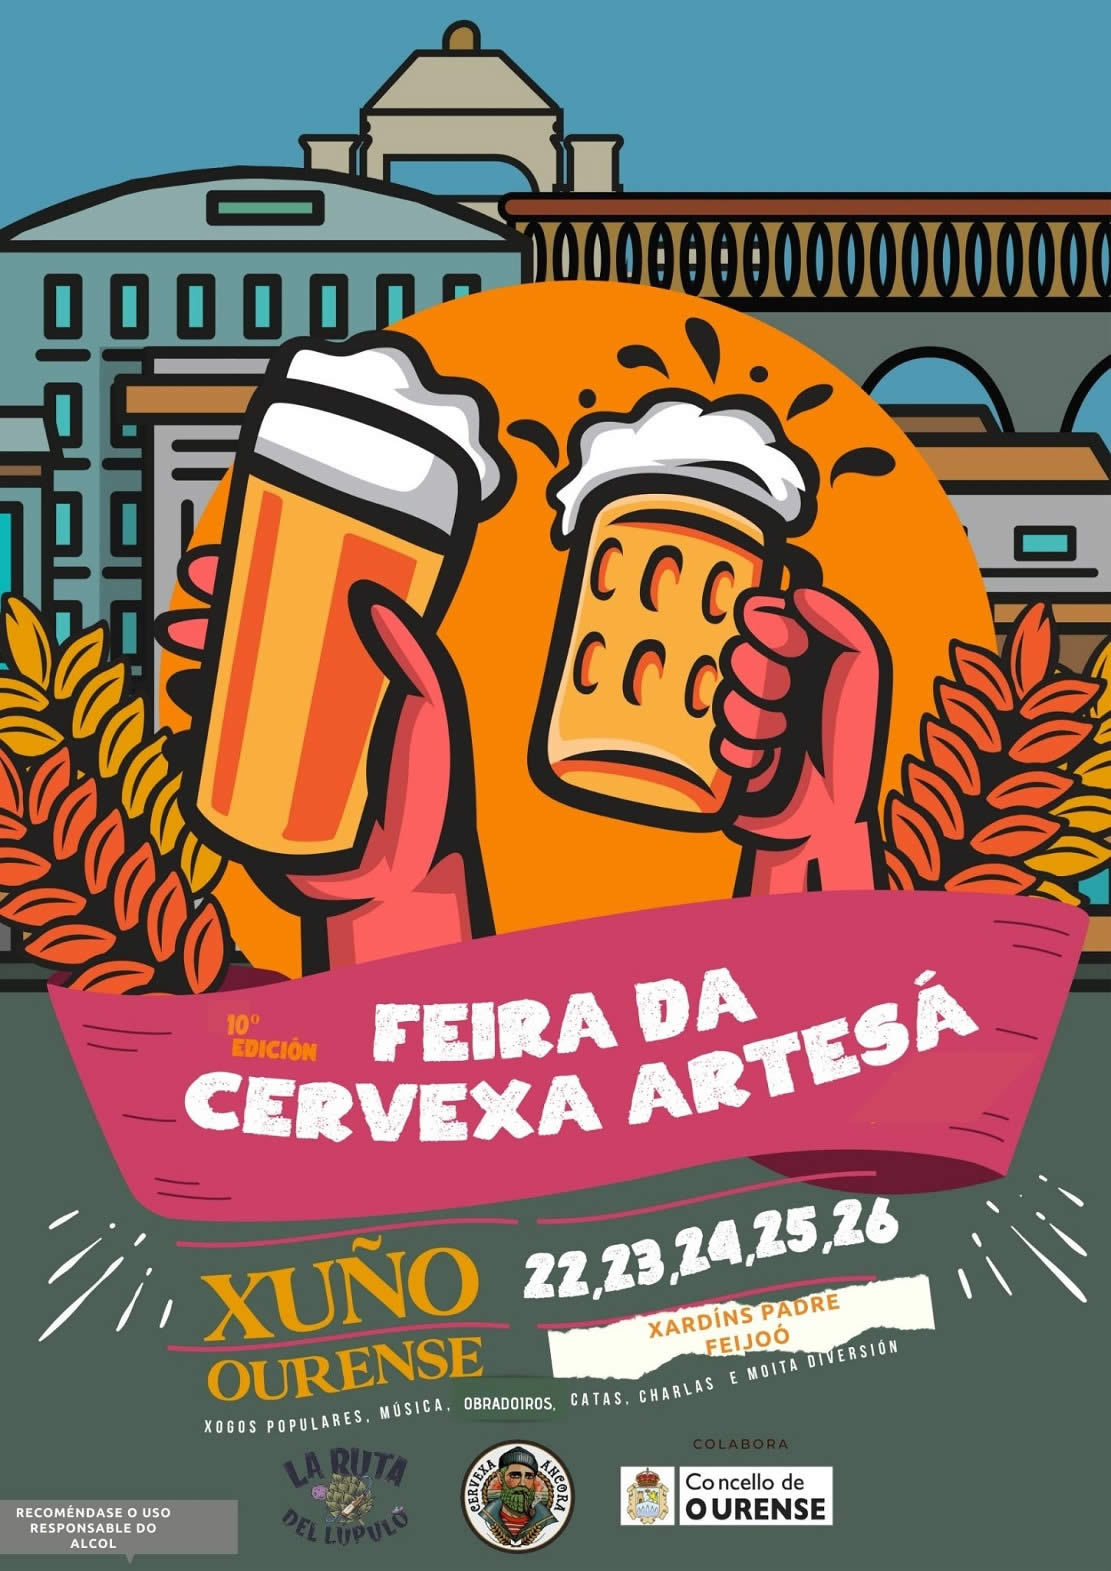 Cartel Feria de la cerveza artesana Ourense 2022